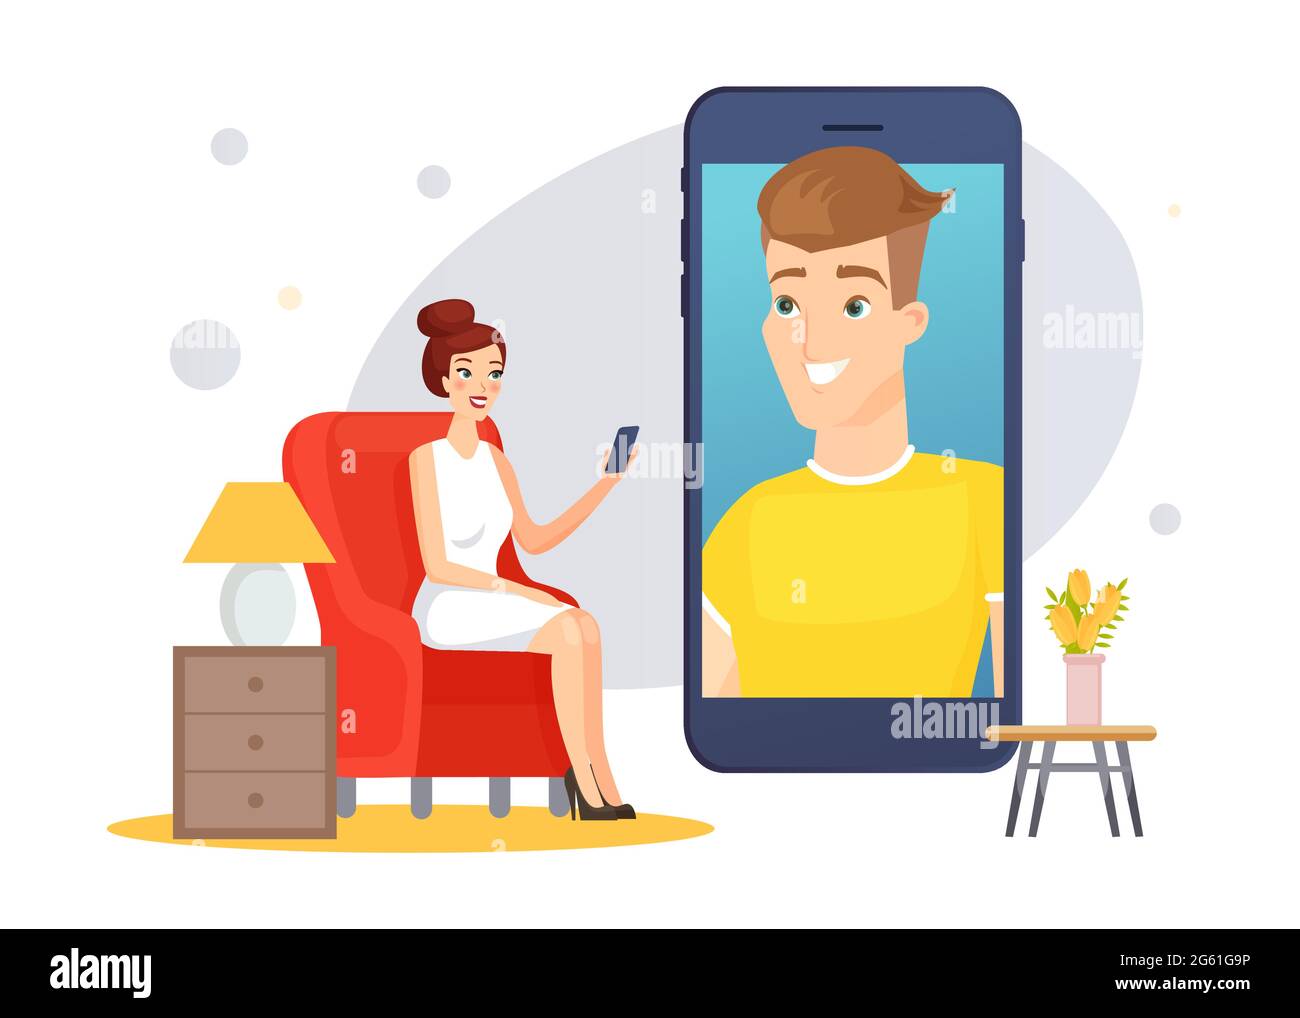 Video chat comunicazione, felice donna che chiacchiera con l'uomo online in conversazione virtuale Illustrazione Vettoriale